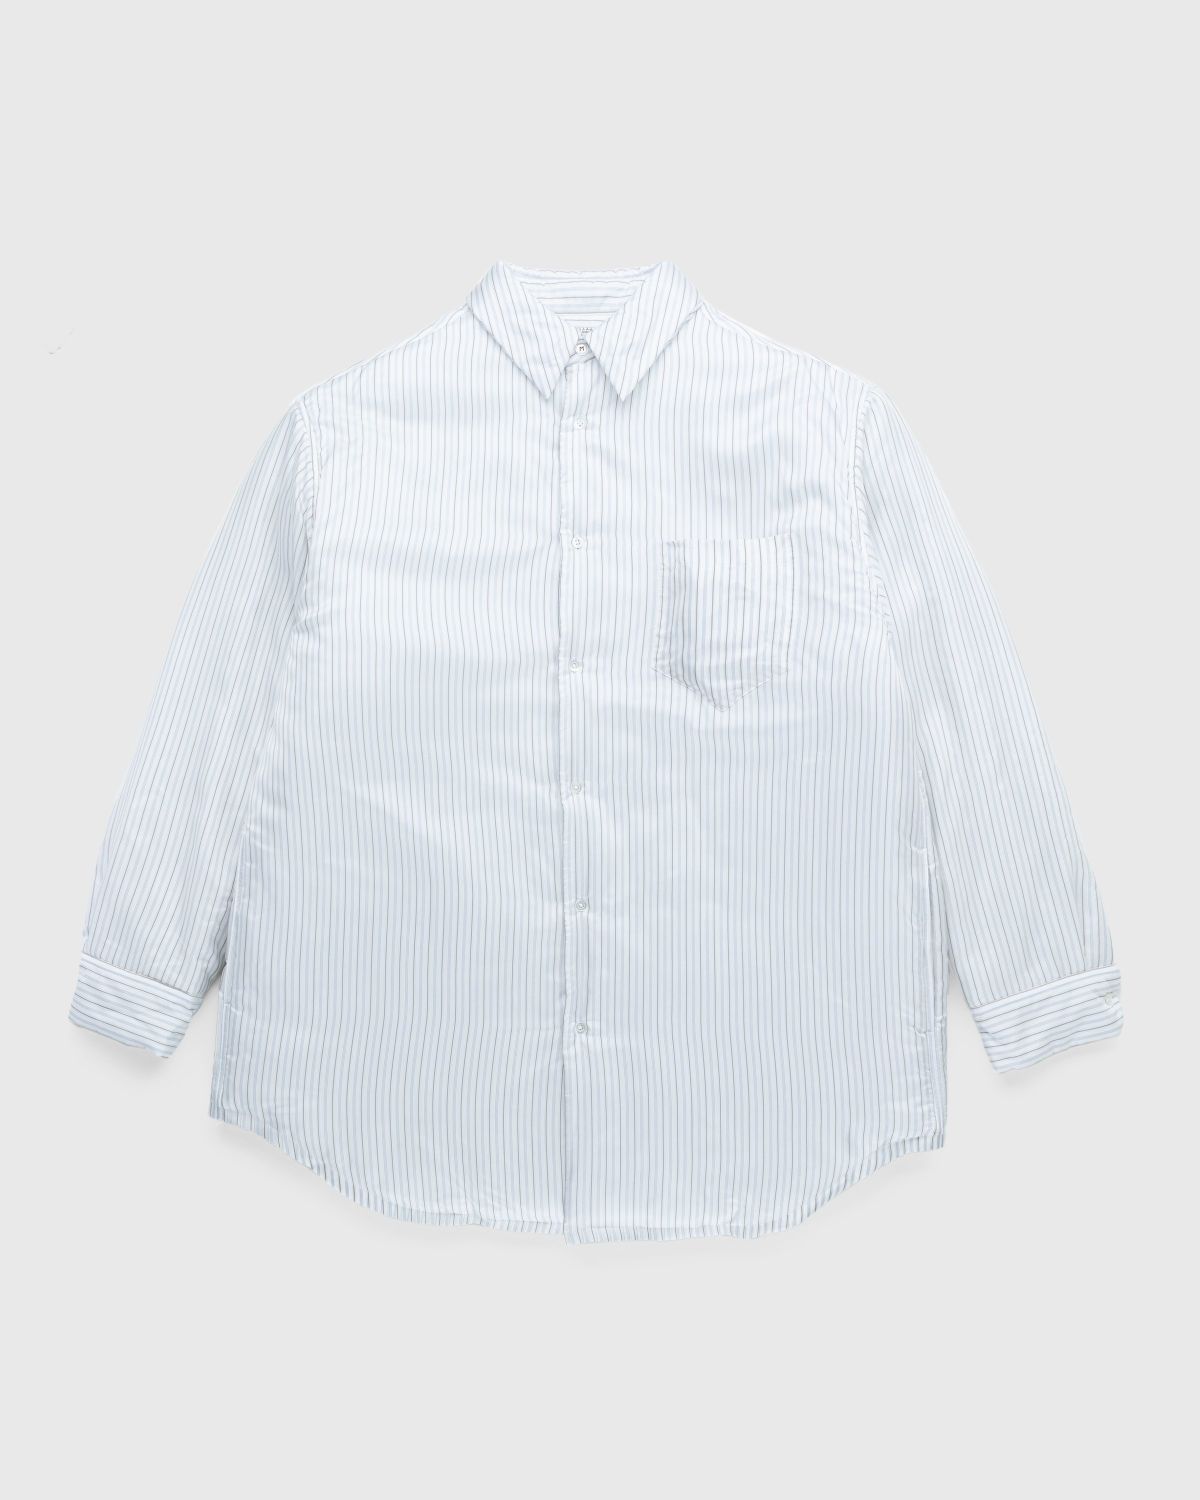 Maison Margiela – Padded Stripe Shirt Multi - Shirts - White - Image 1